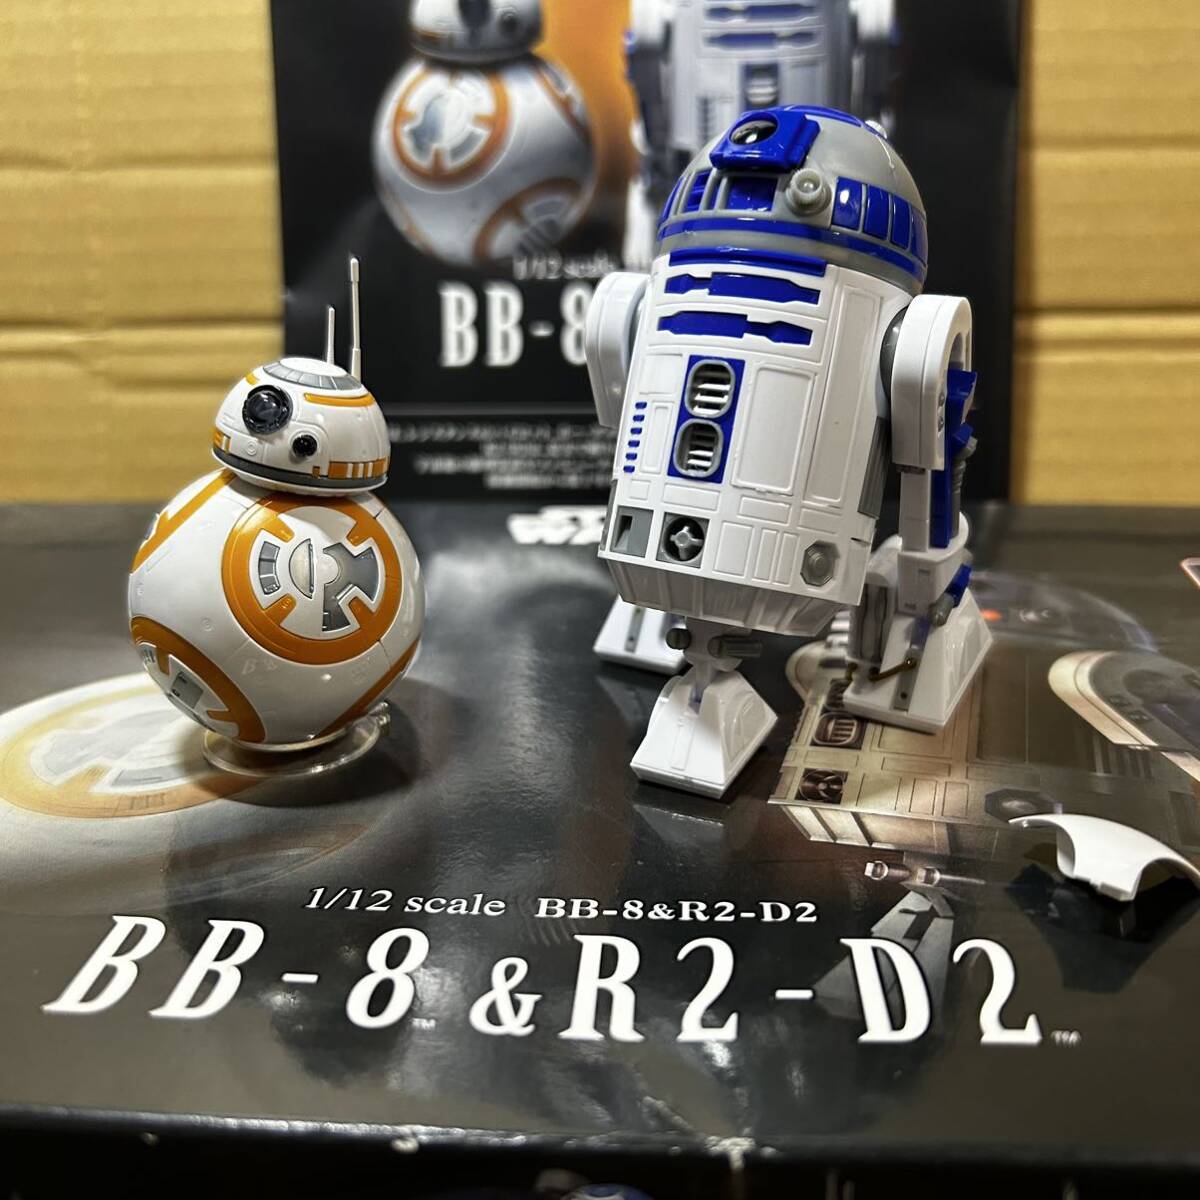 バンダイ BANDAI スターウォーズ BB-8 & R2-D2 1/12スケール プラモデル 組立完成品 STAR WARS BB-8 & R2-D2 元箱 組立説明書付きの画像1